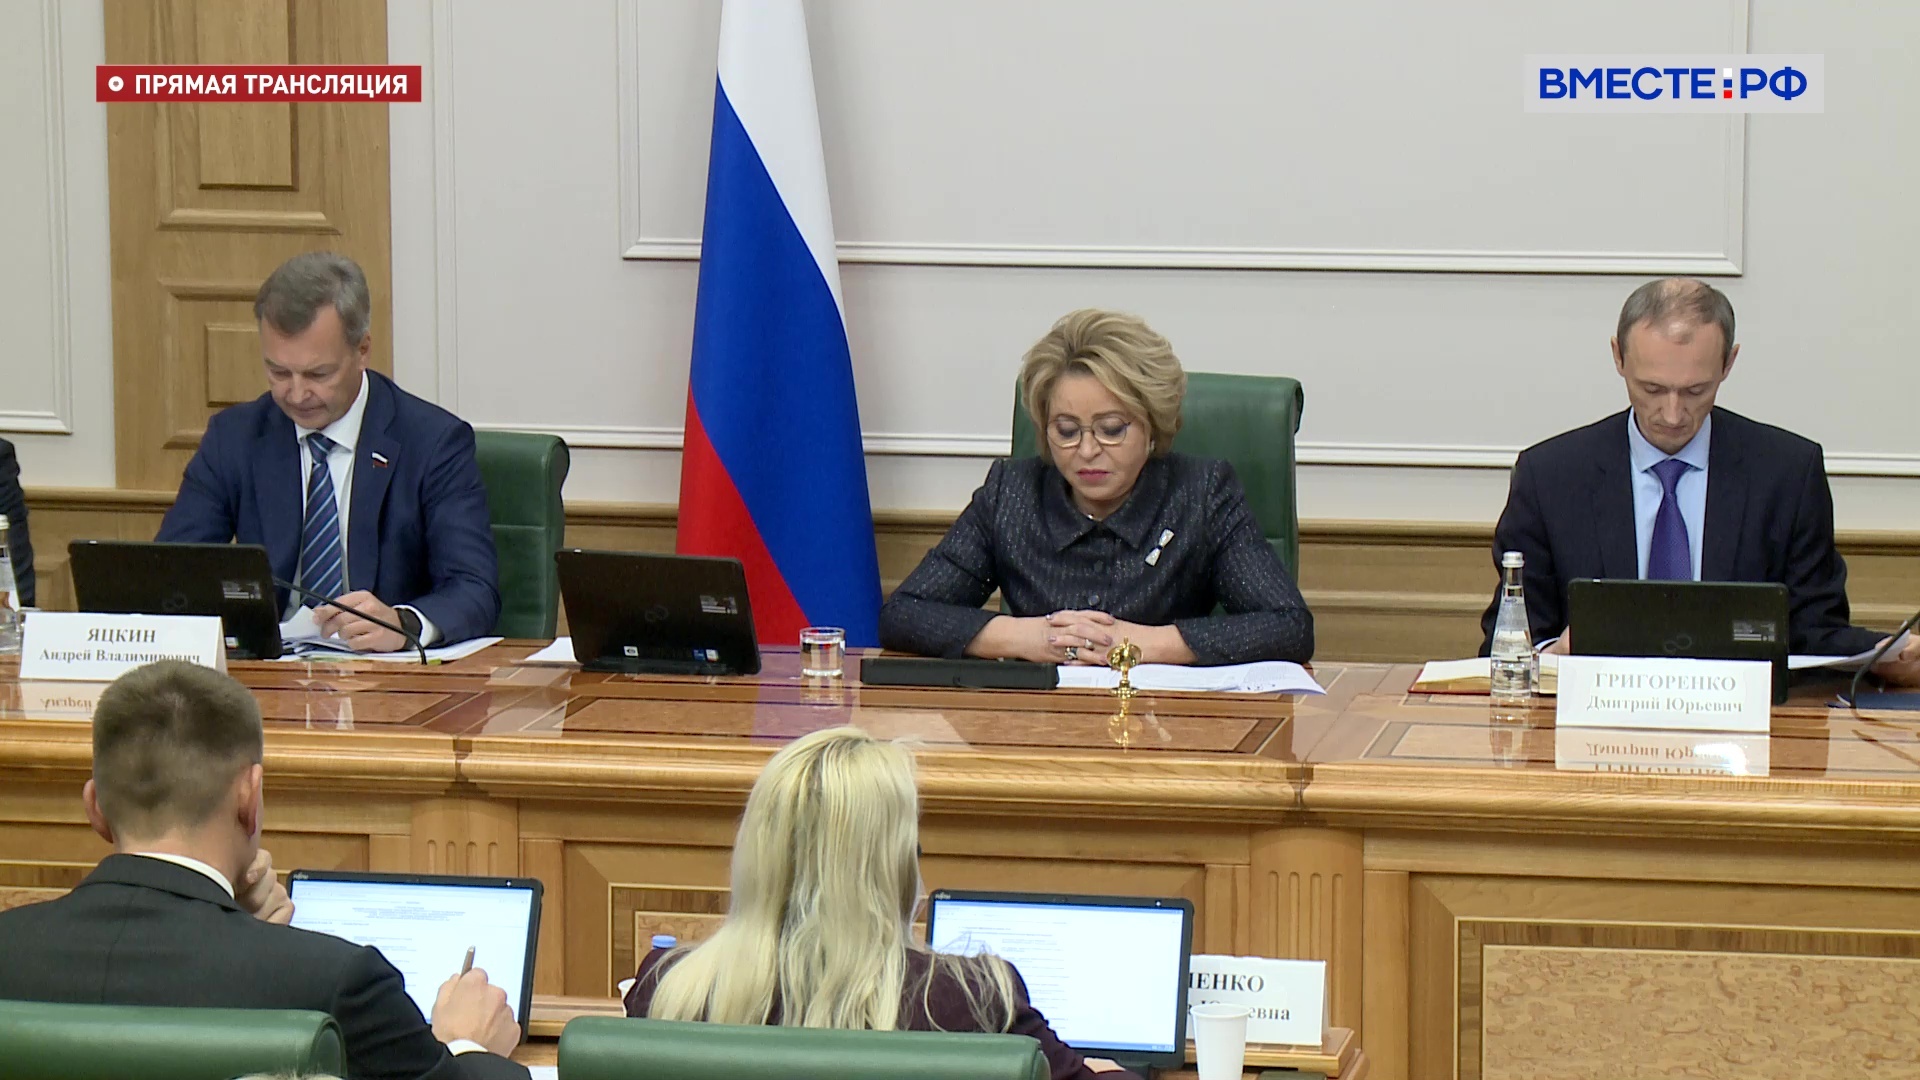 Матвиенко: интеграция новых регионов в правовую систему страны – приоритетная задача